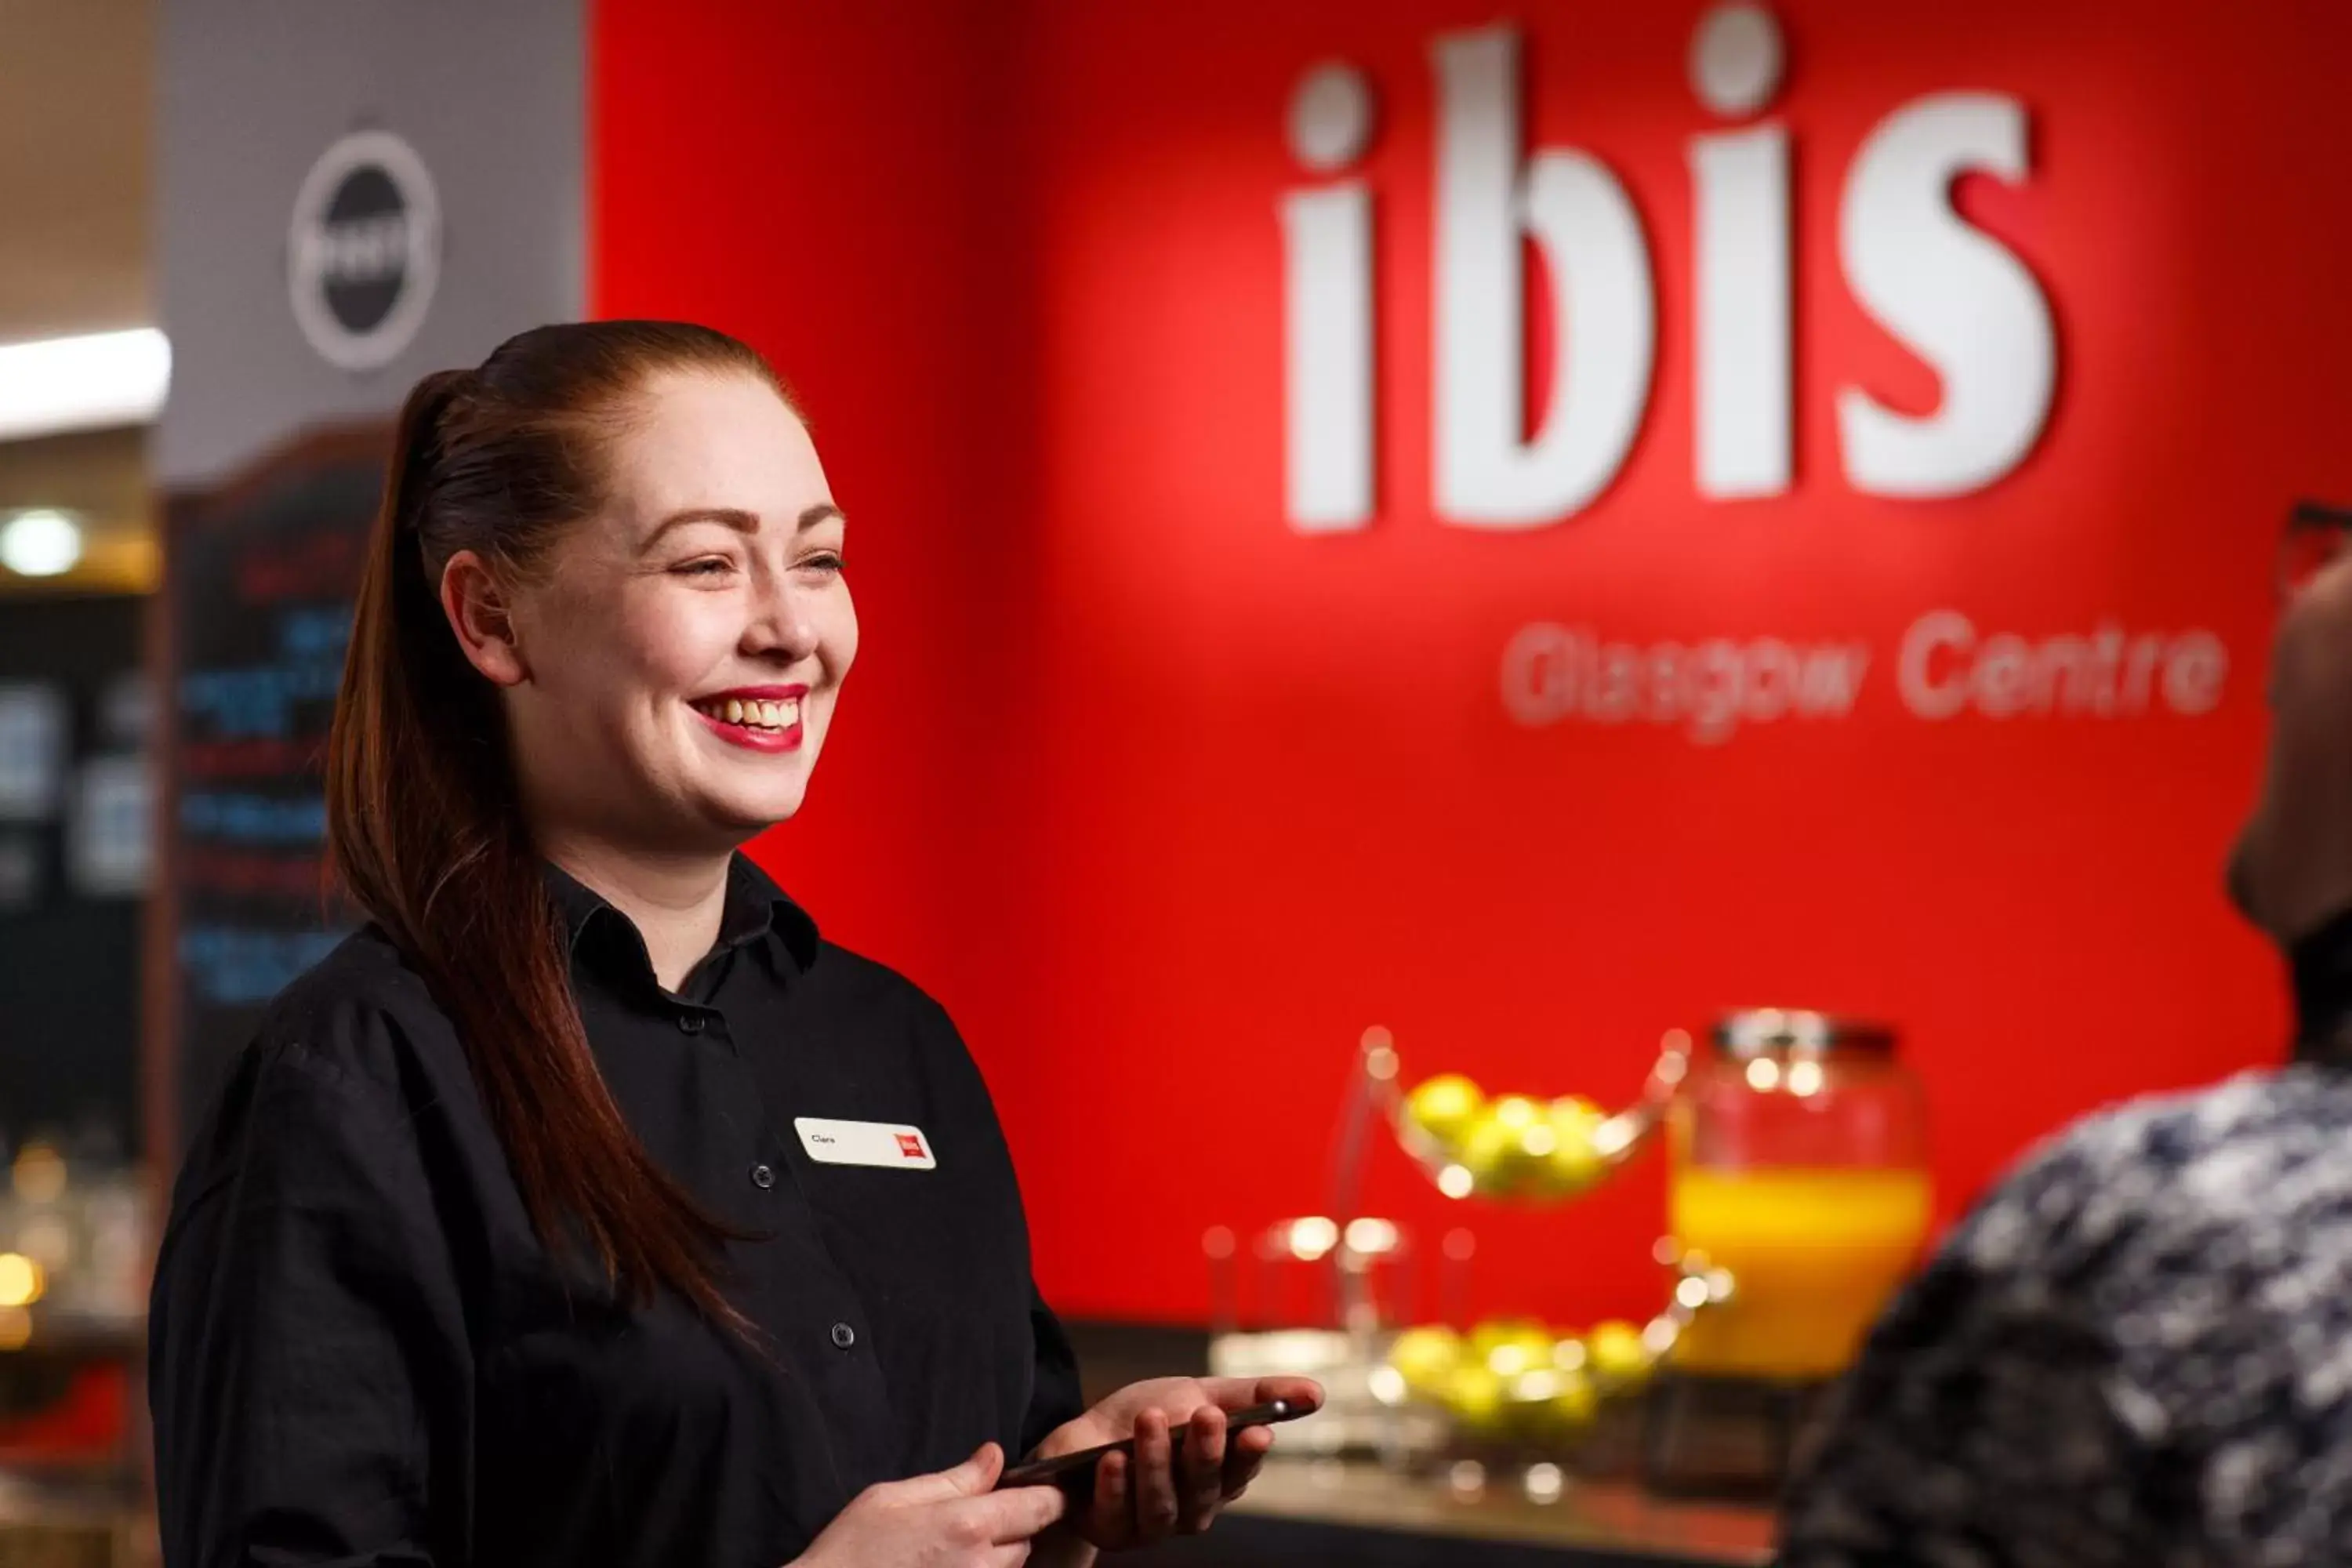 Staff in ibis Glasgow City Centre – Sauchiehall St